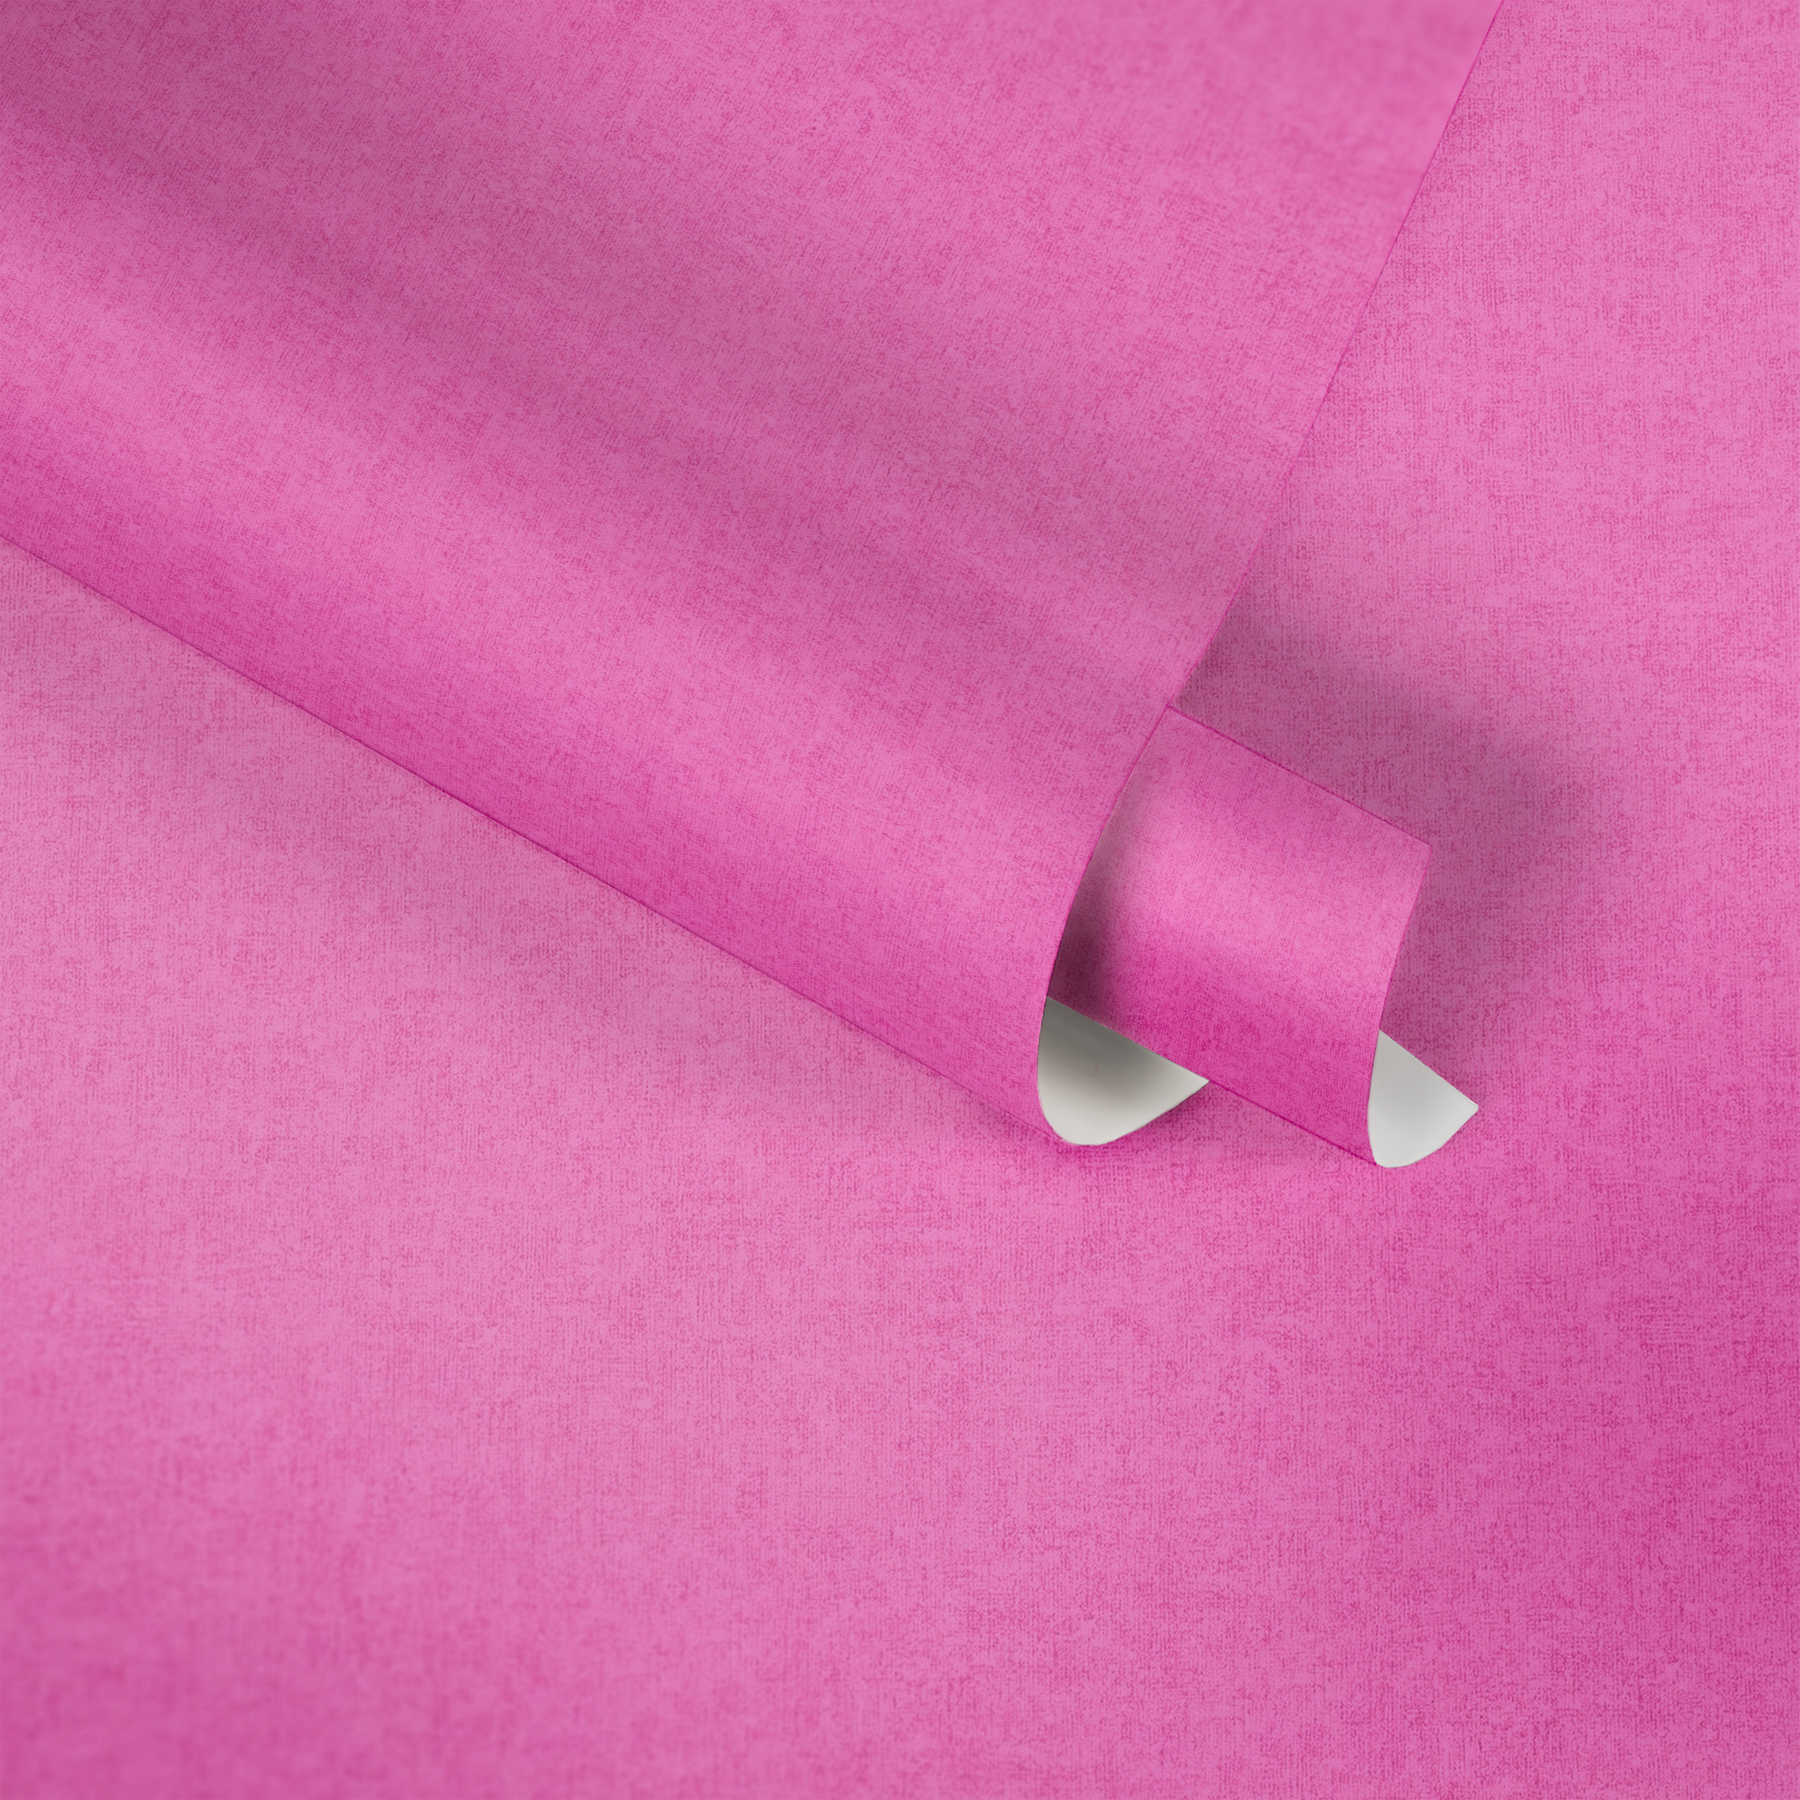             Papier peint rose pour chambre d'enfant fille, uni
        